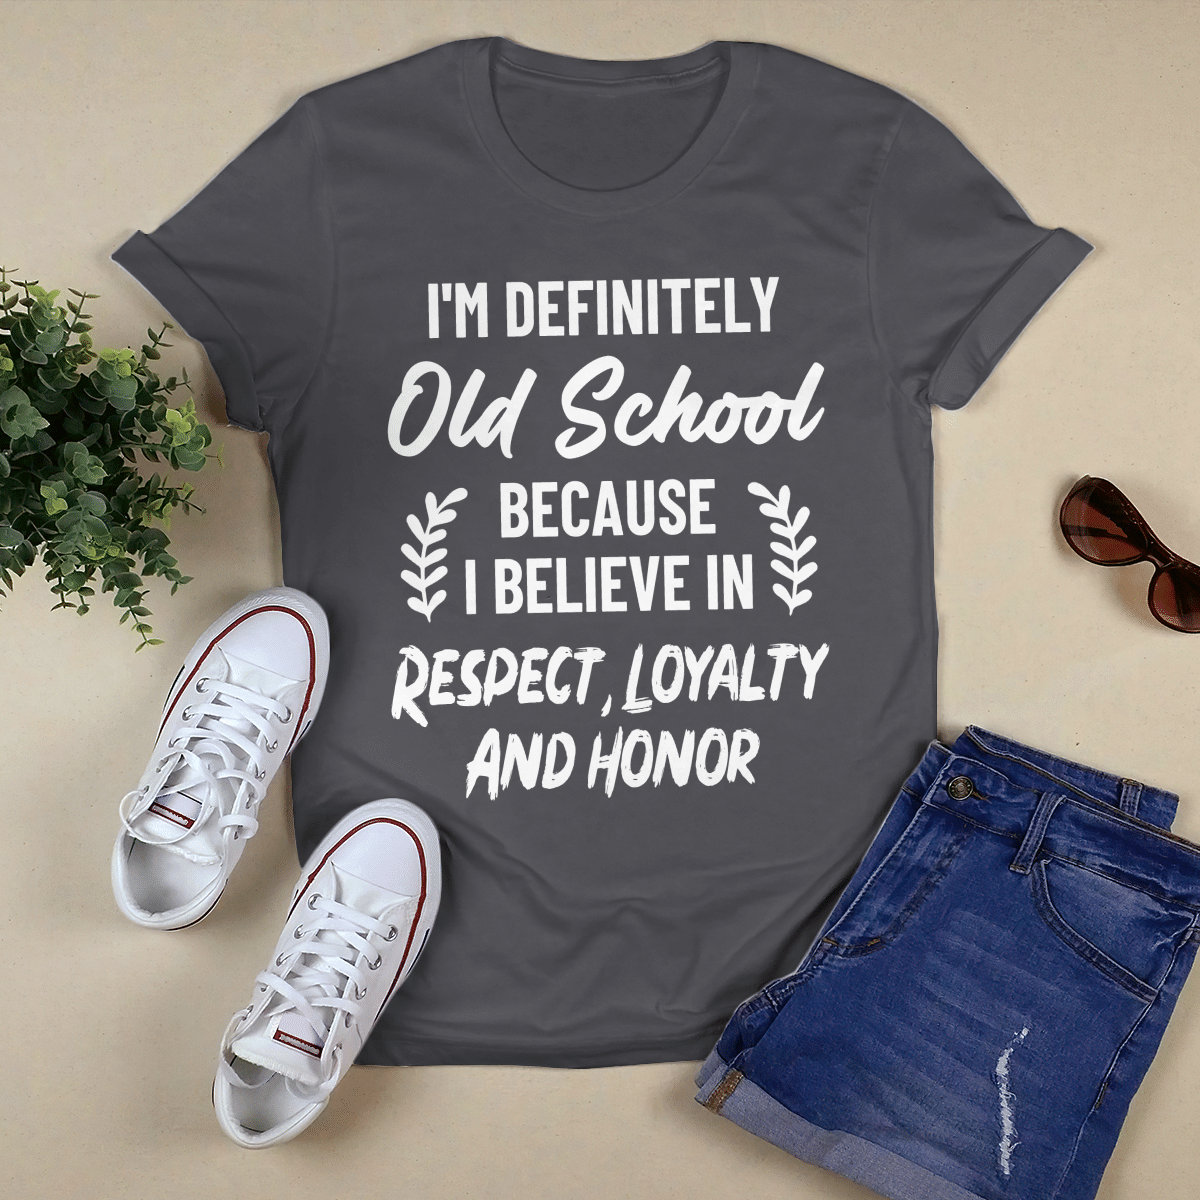 I_m Definitely Old School shirt